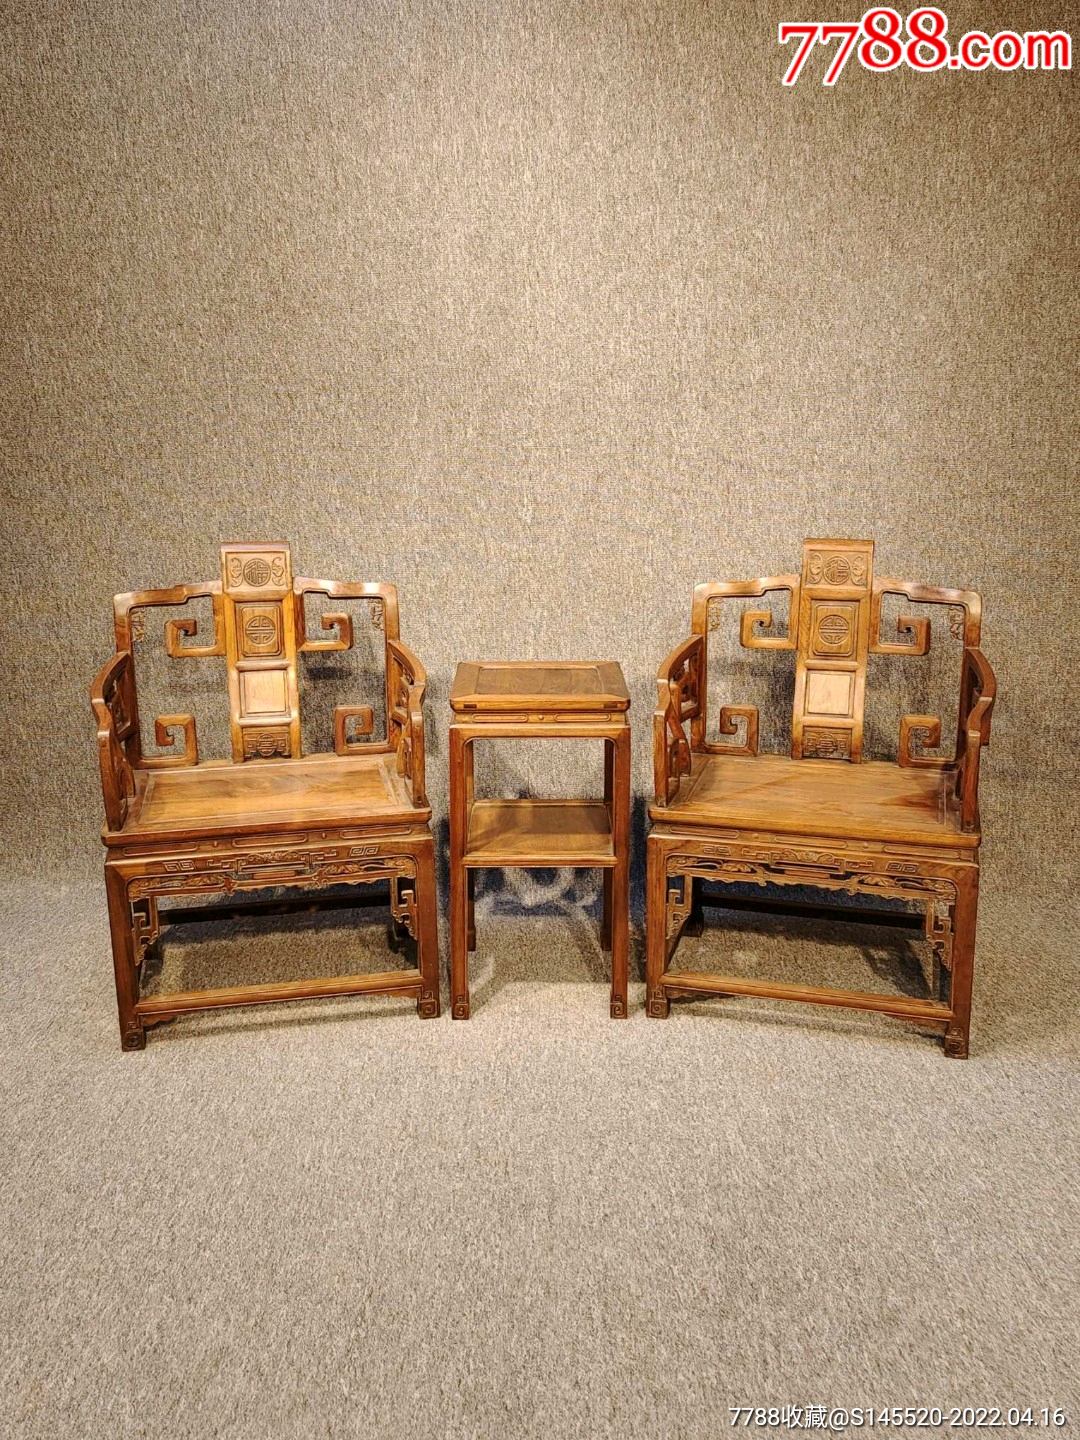 典藏老黄花梨木太师椅古董家具清代中期海南黄花梨上乘木料制作榫卯